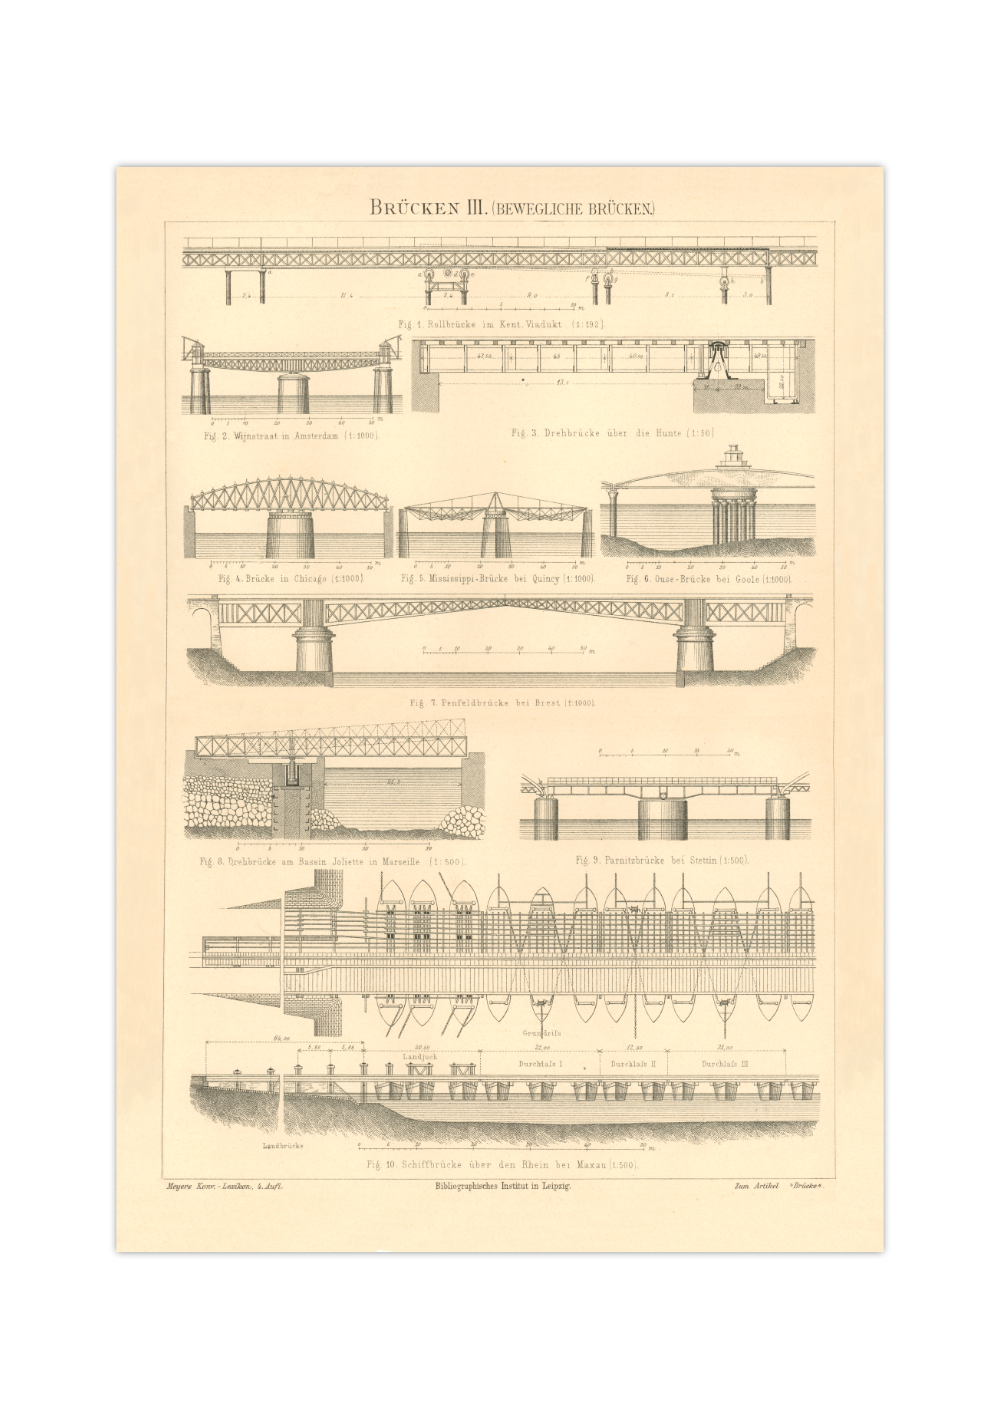 Das Poster zu verschiedenen Brücken ist eine Vintage Lithographie aus Meyers Koversations-Lexikon aus dem Jahr 1890